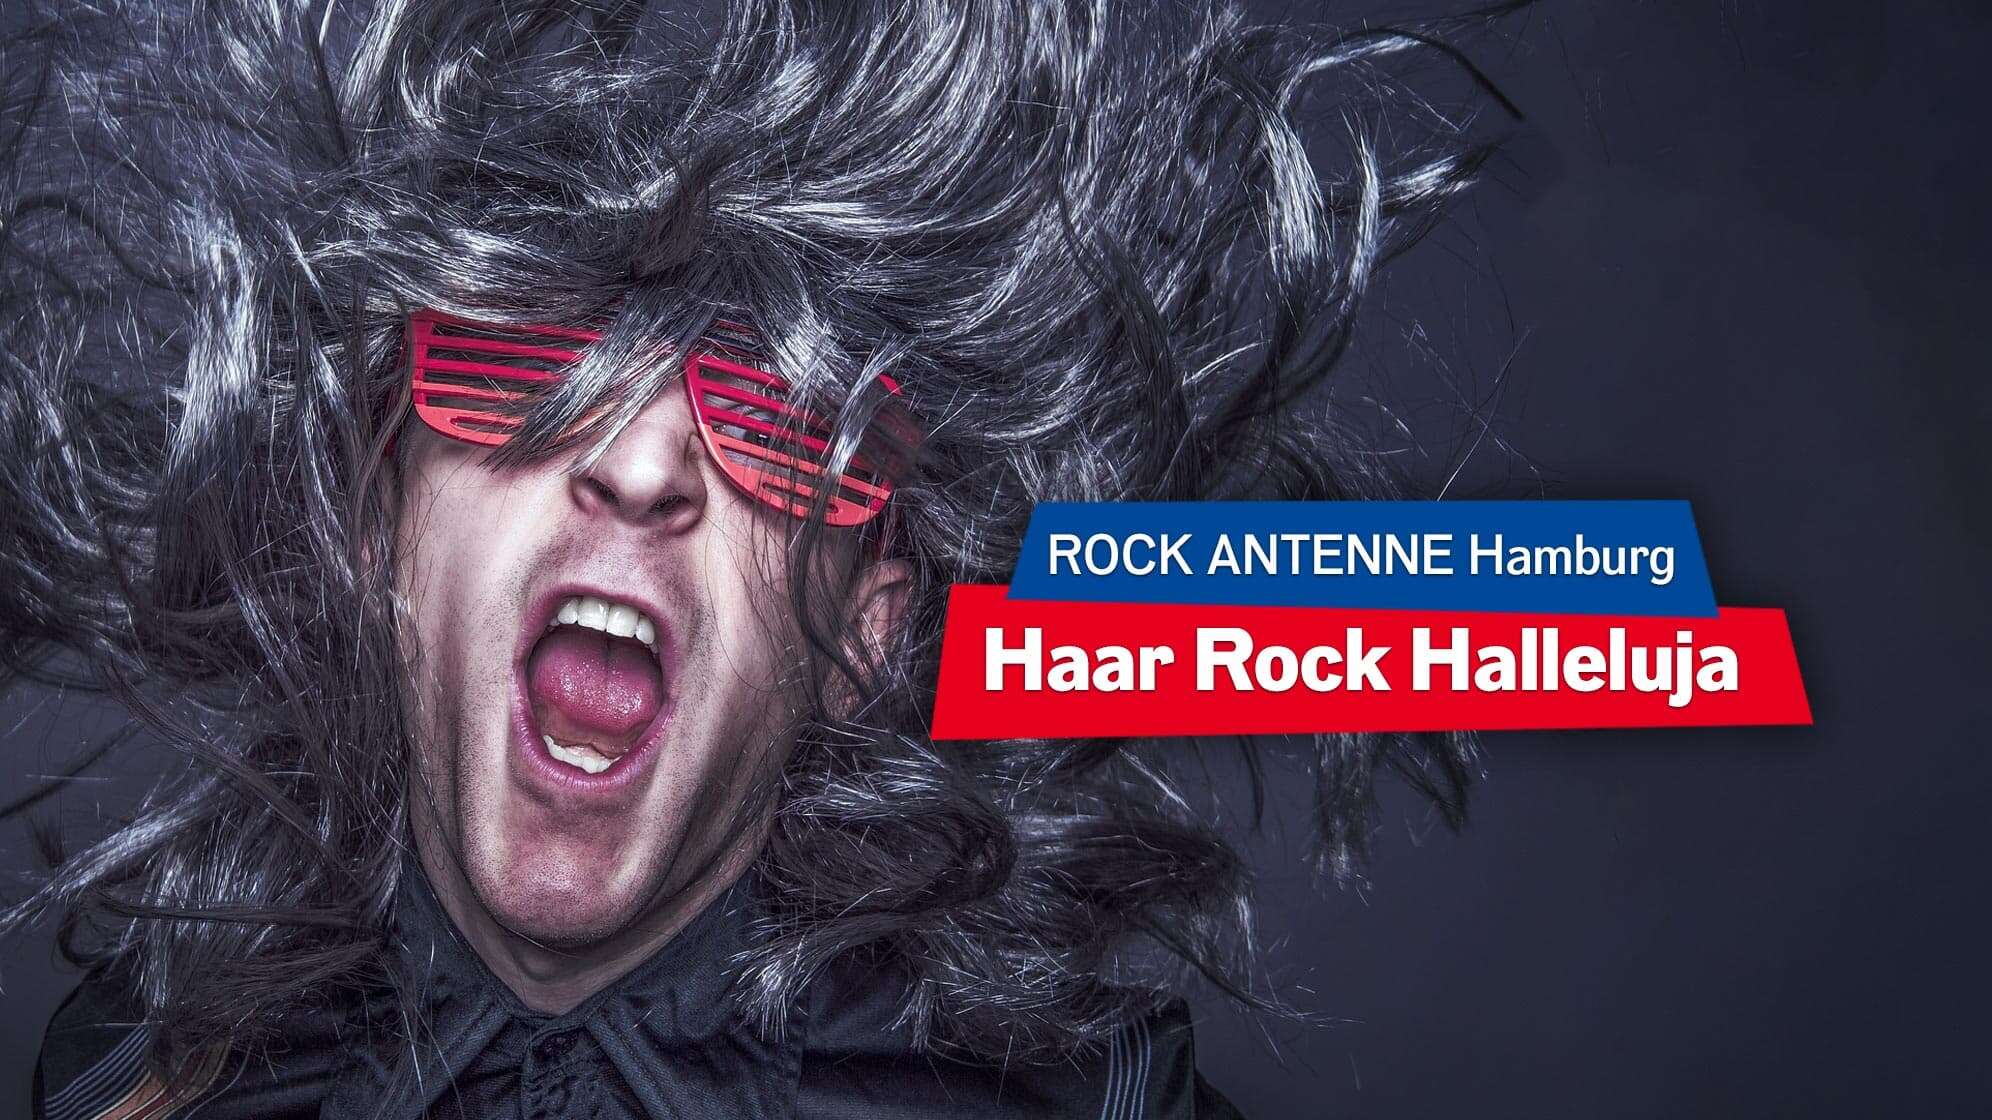 Bild eines Mannes mit grauer, wallender Perücke, der Headbangt und eine Sonnenbrille trägt; Text: "ROCK ANTENNE Hamburg Haar Rock Halleluja"